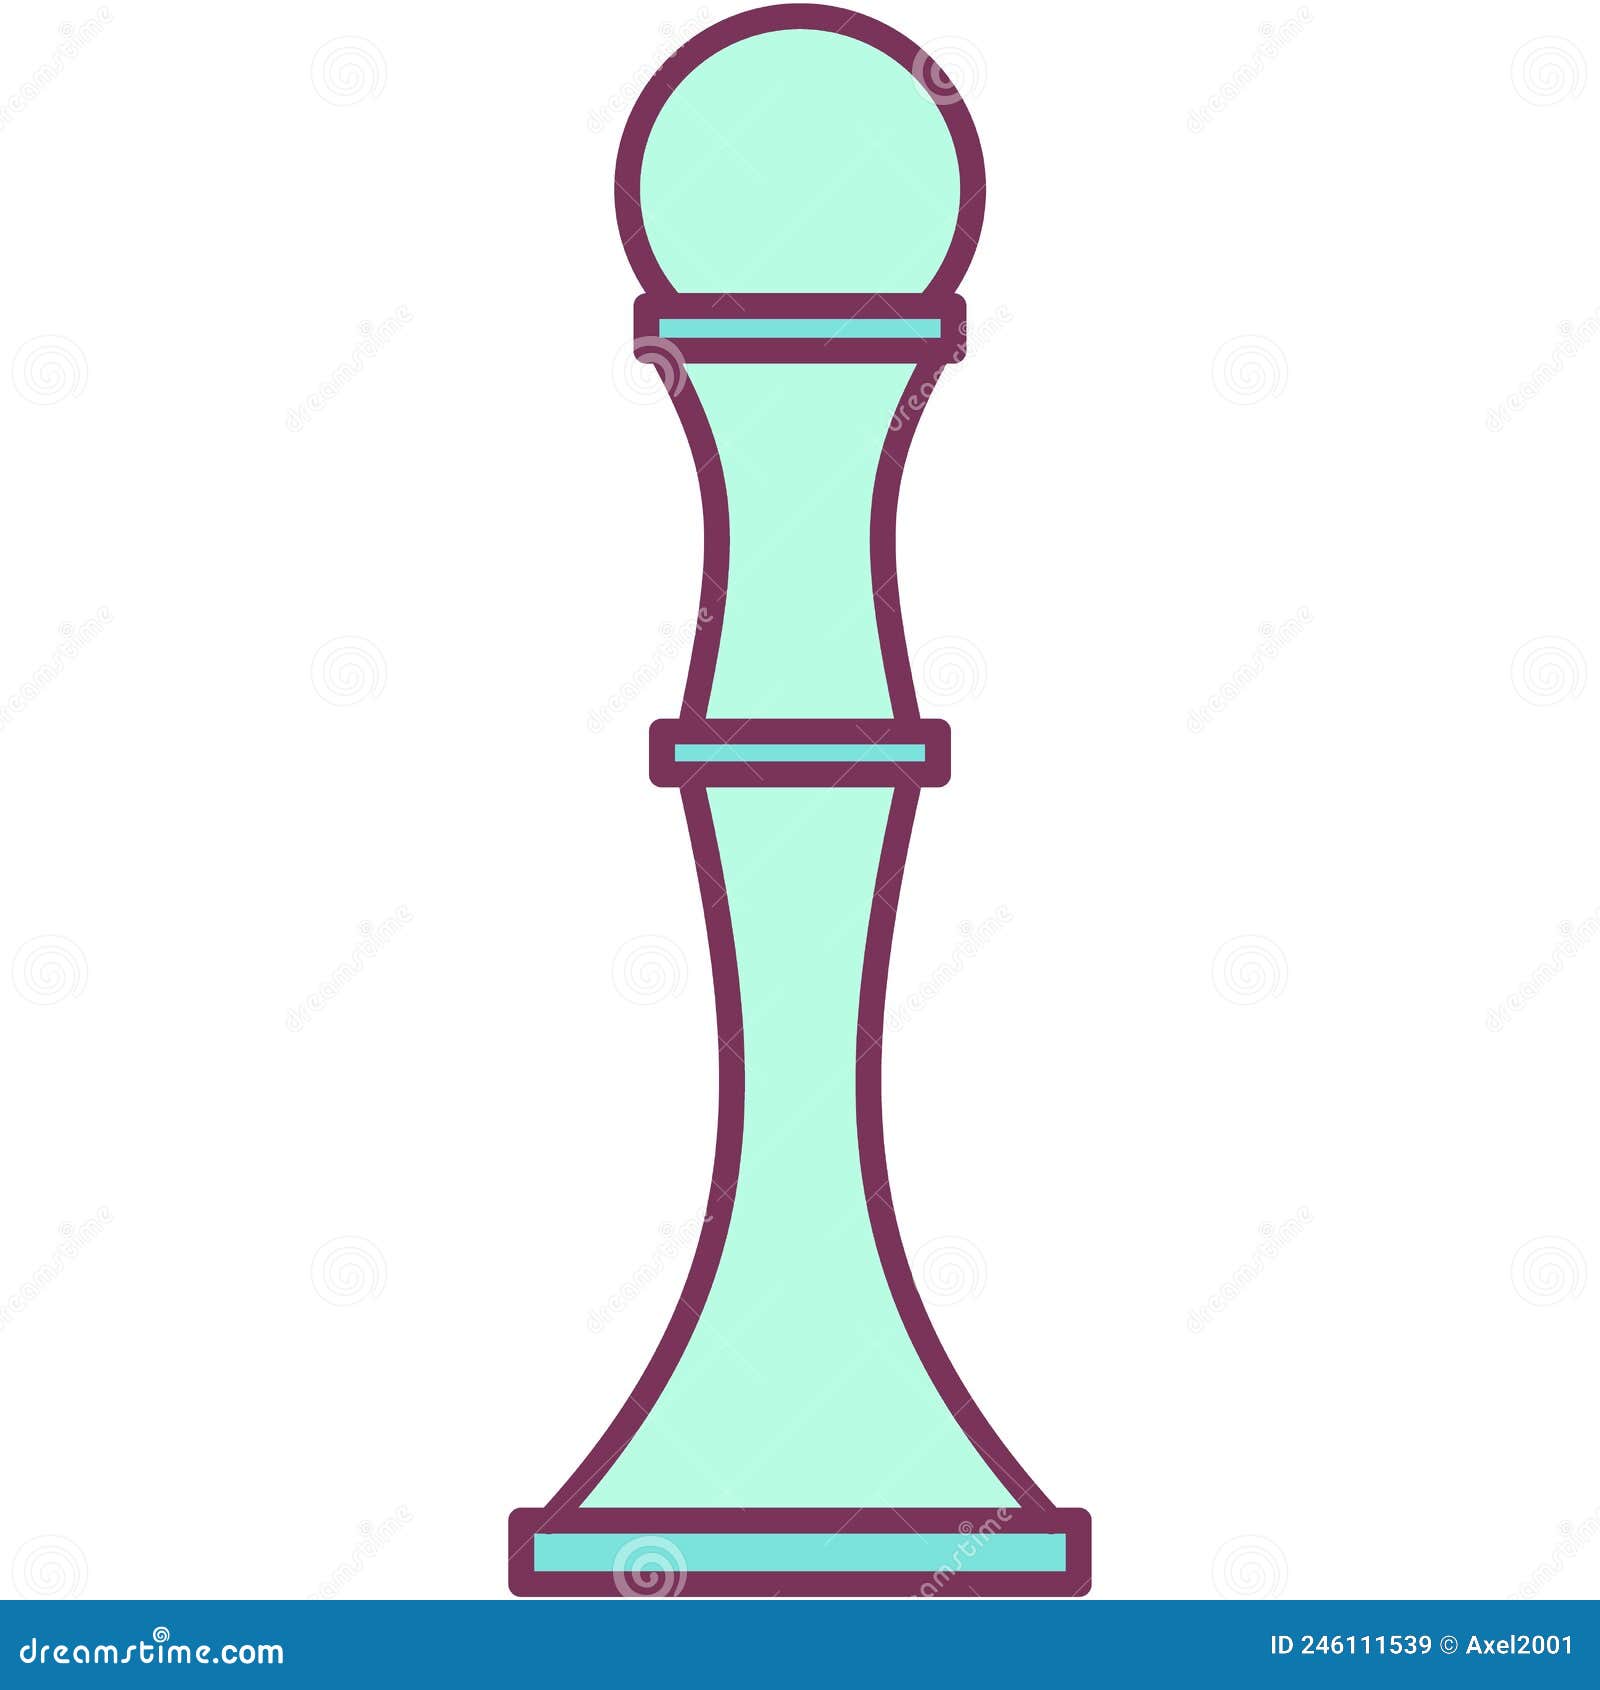 Bispo de ícone de estratégia no vetor de símbolo tático de jogos de xadrez